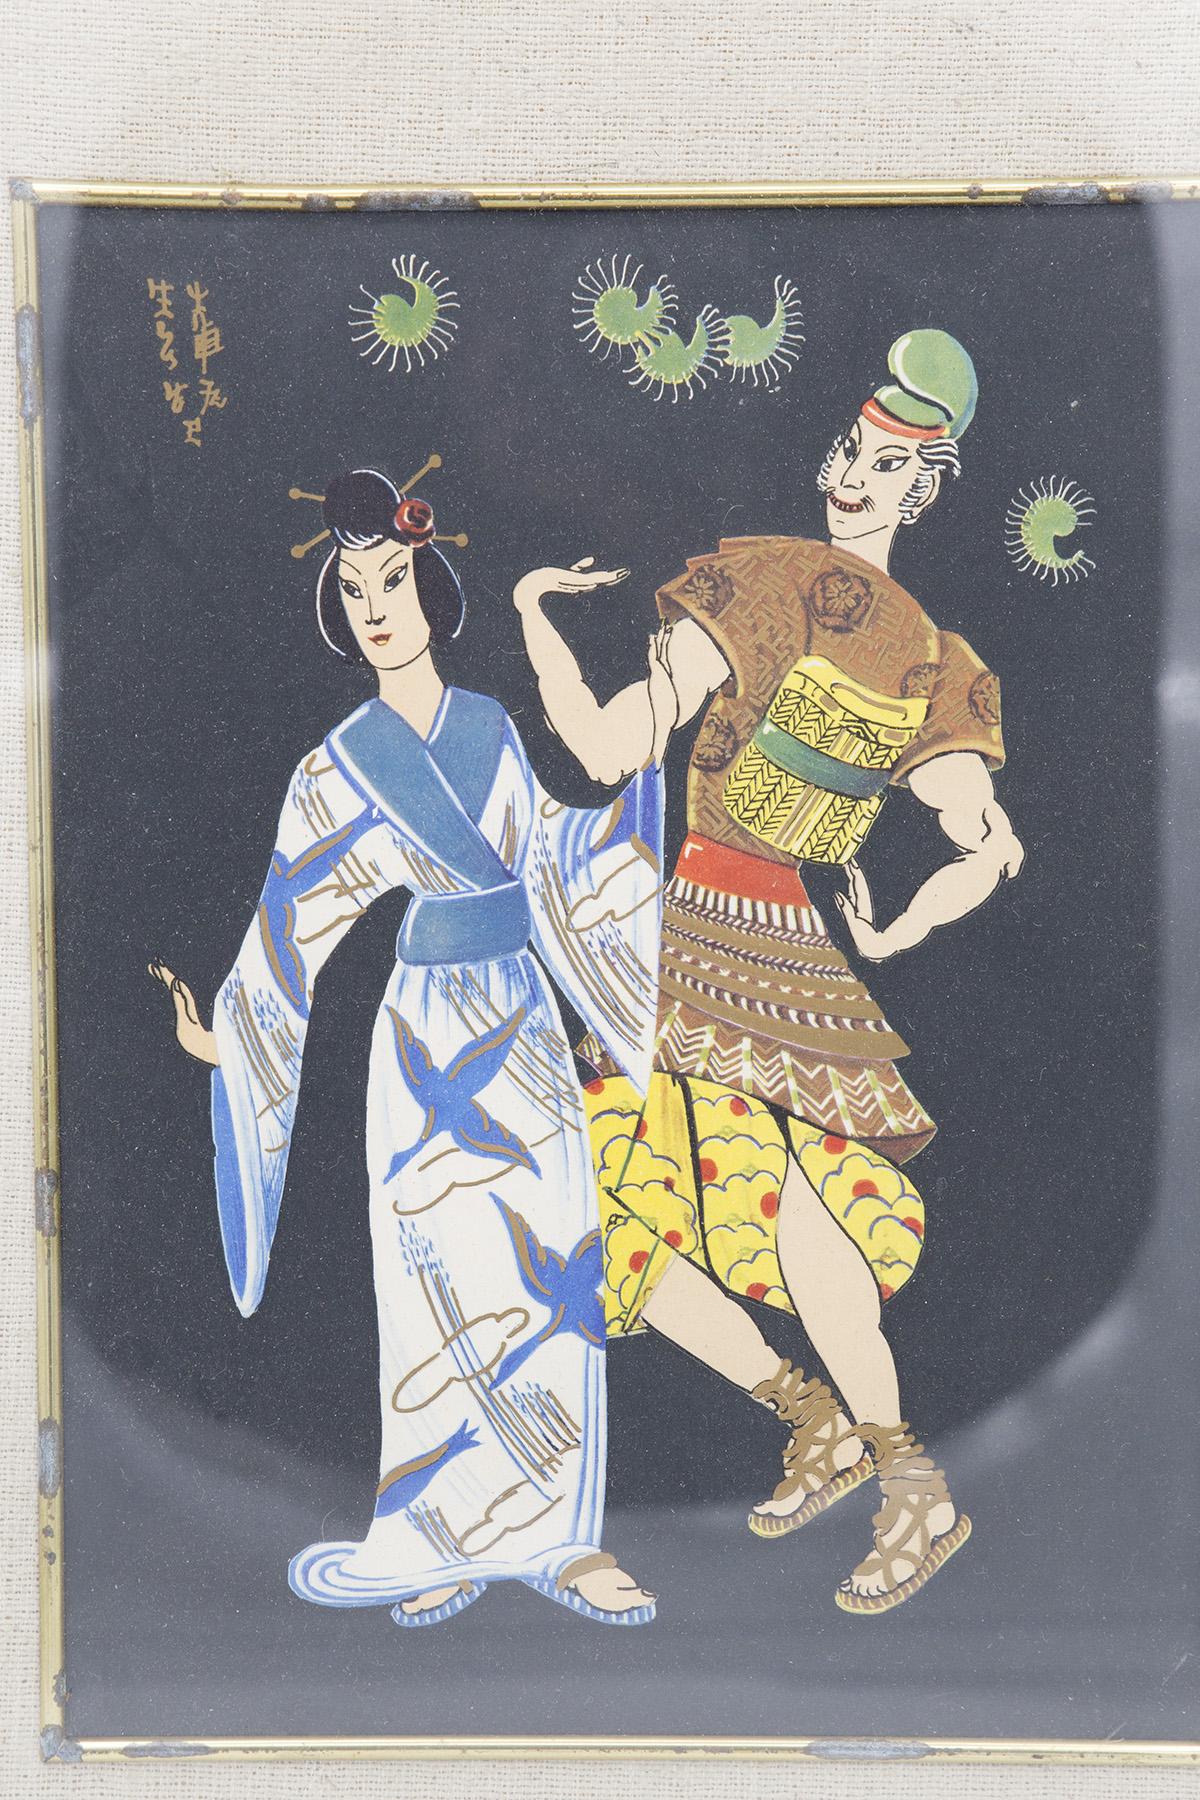 Antike und sehr seltene japanische Malerei aus den frühen 1900er Jahren, feine japanische Herstellung.
Das Gemälde hat einen rechteckigen Messingrahmen mit abgerundeten Ecken. Intern sehen wir einen weiteren Rahmen in Yuta, klassische Sandfarbe,